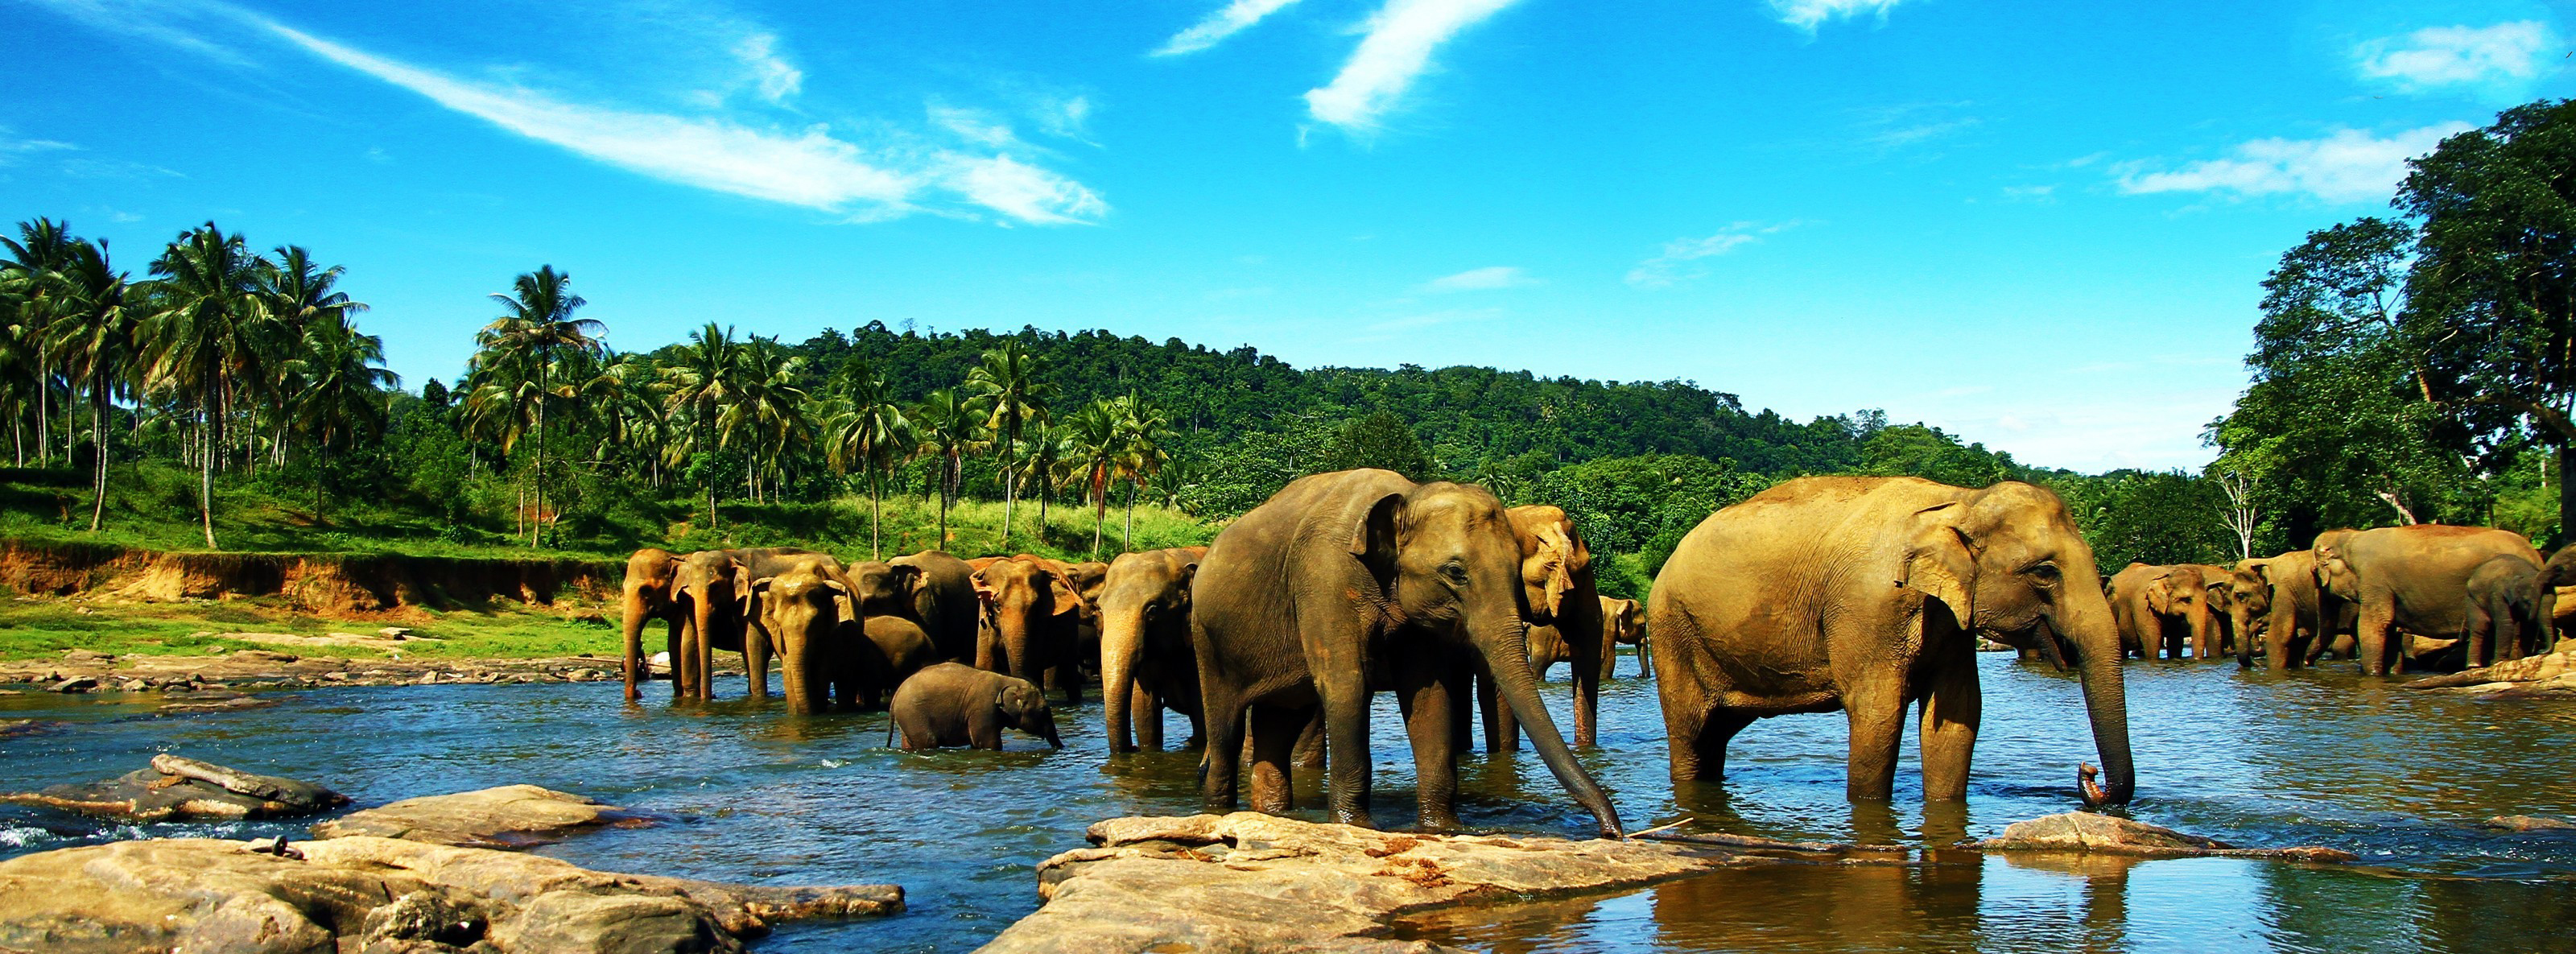 317682 descargar imagen animales, elefante asiático, excelente realmente, elefantes: fondos de pantalla y protectores de pantalla gratis